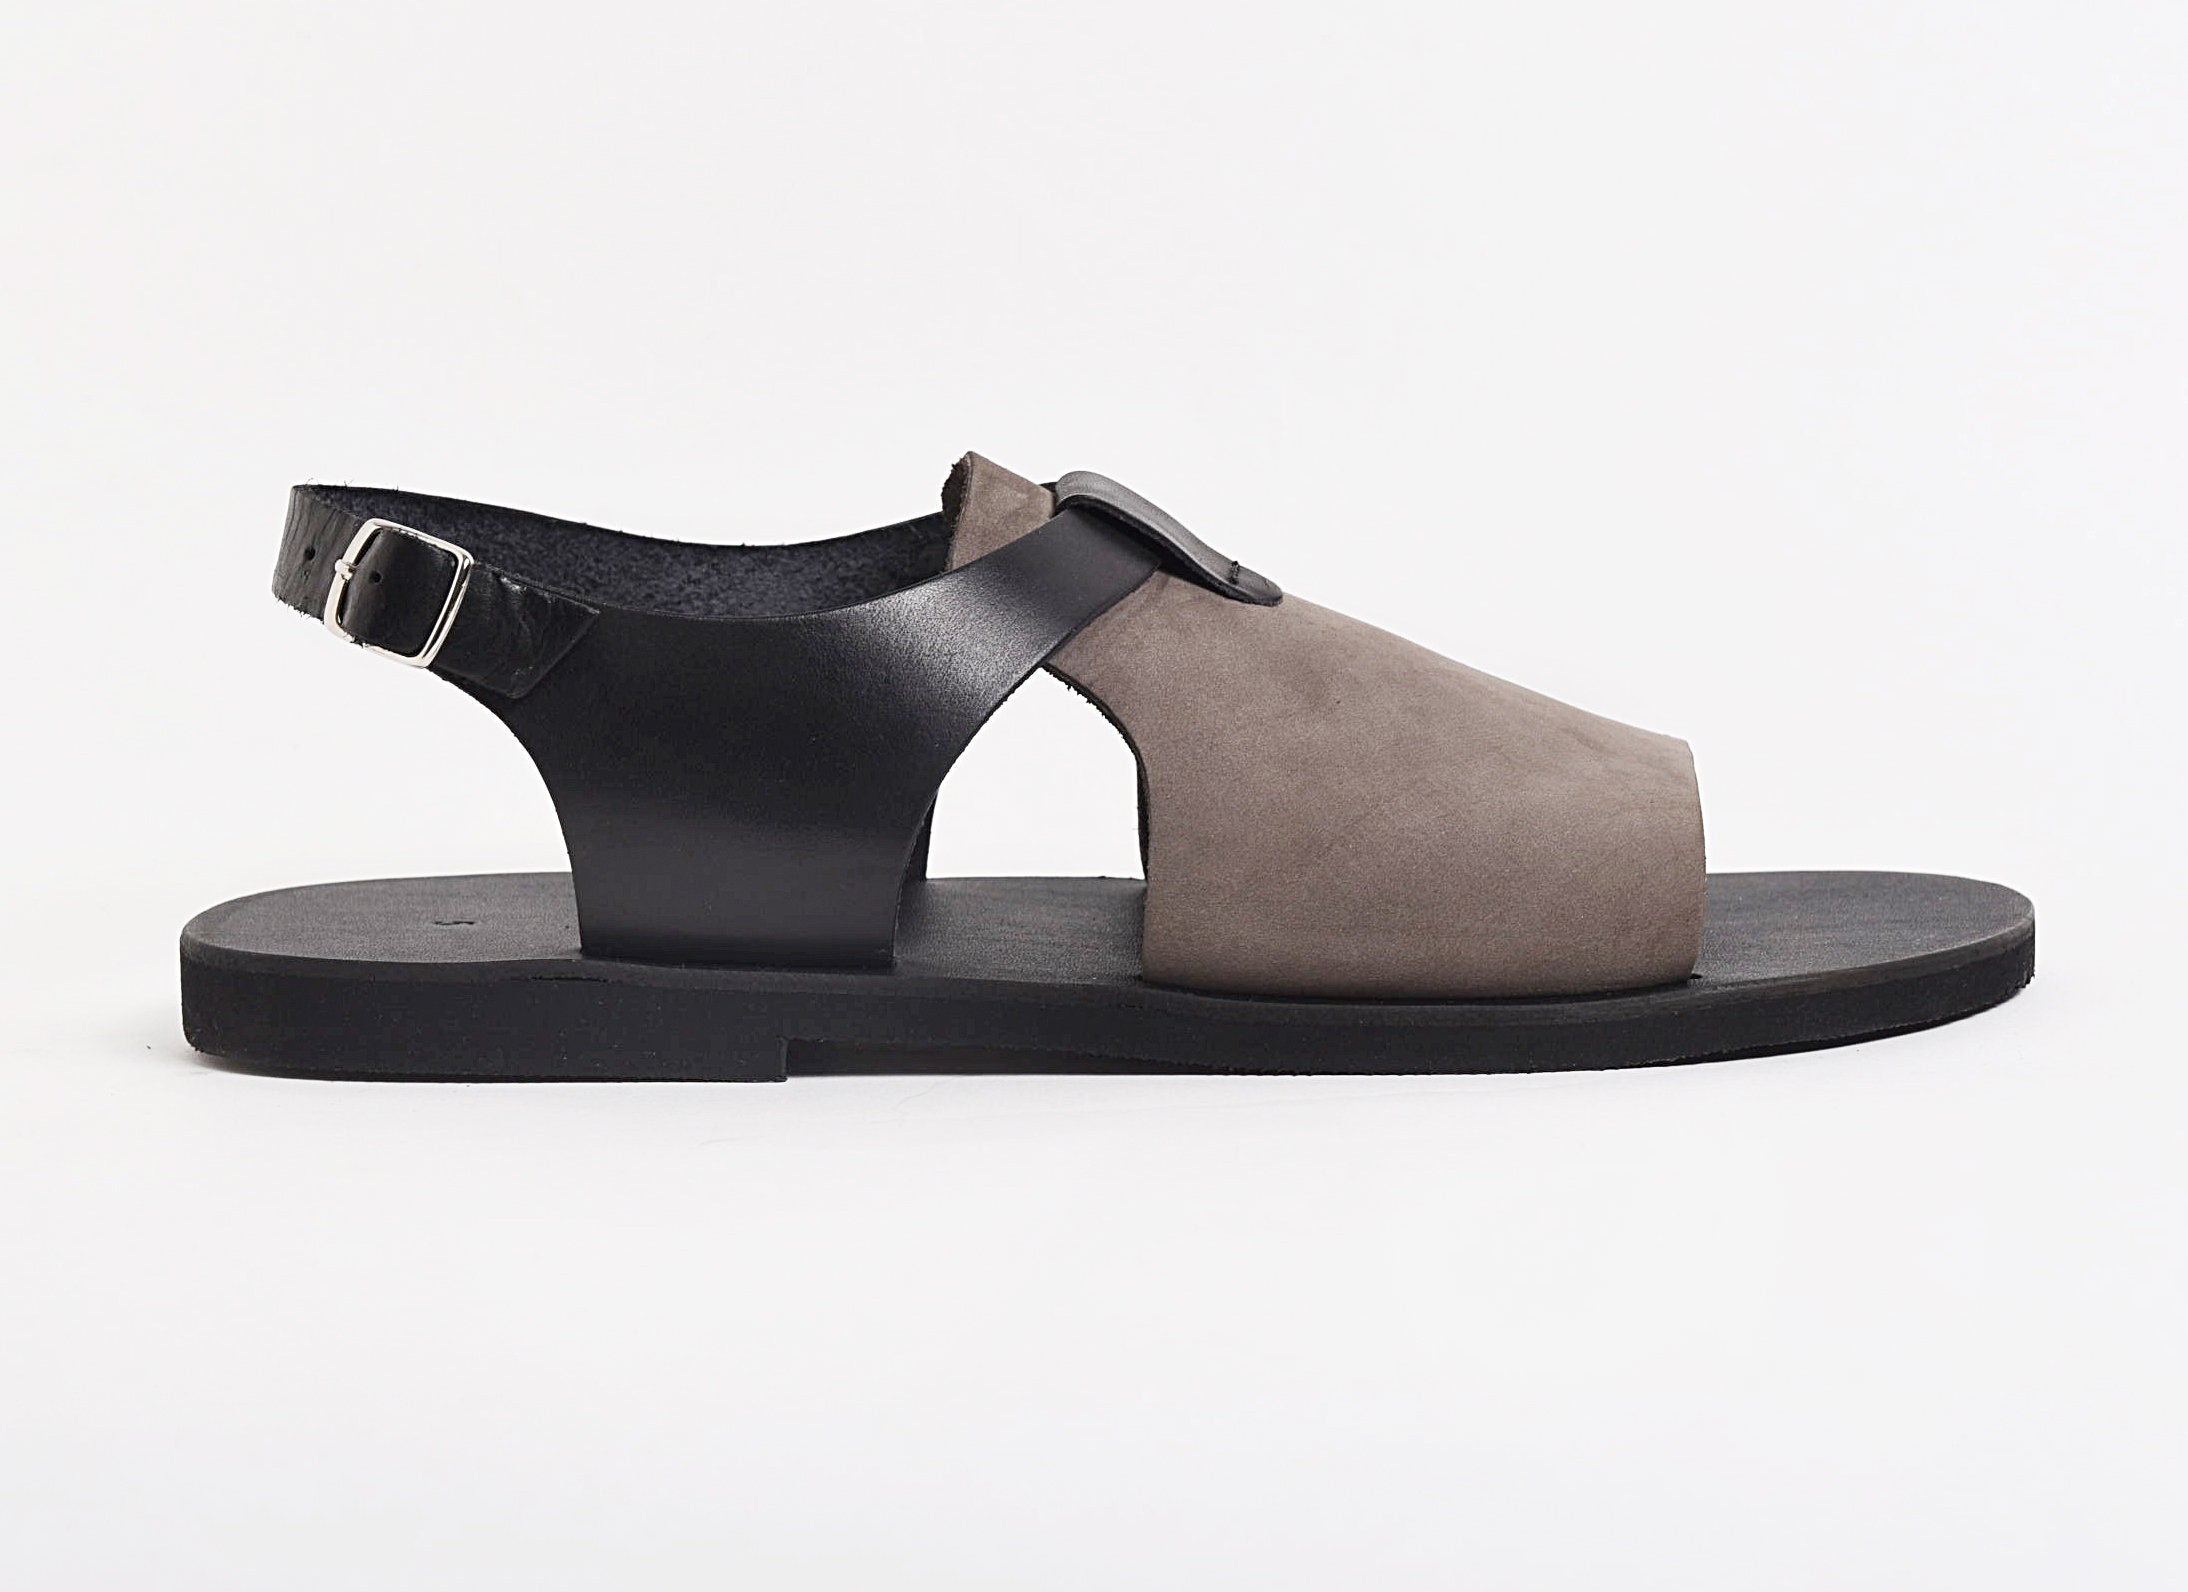 LEATHER SANDALS MEN Black Men Shoes Summer Genuine Leather - Etsy